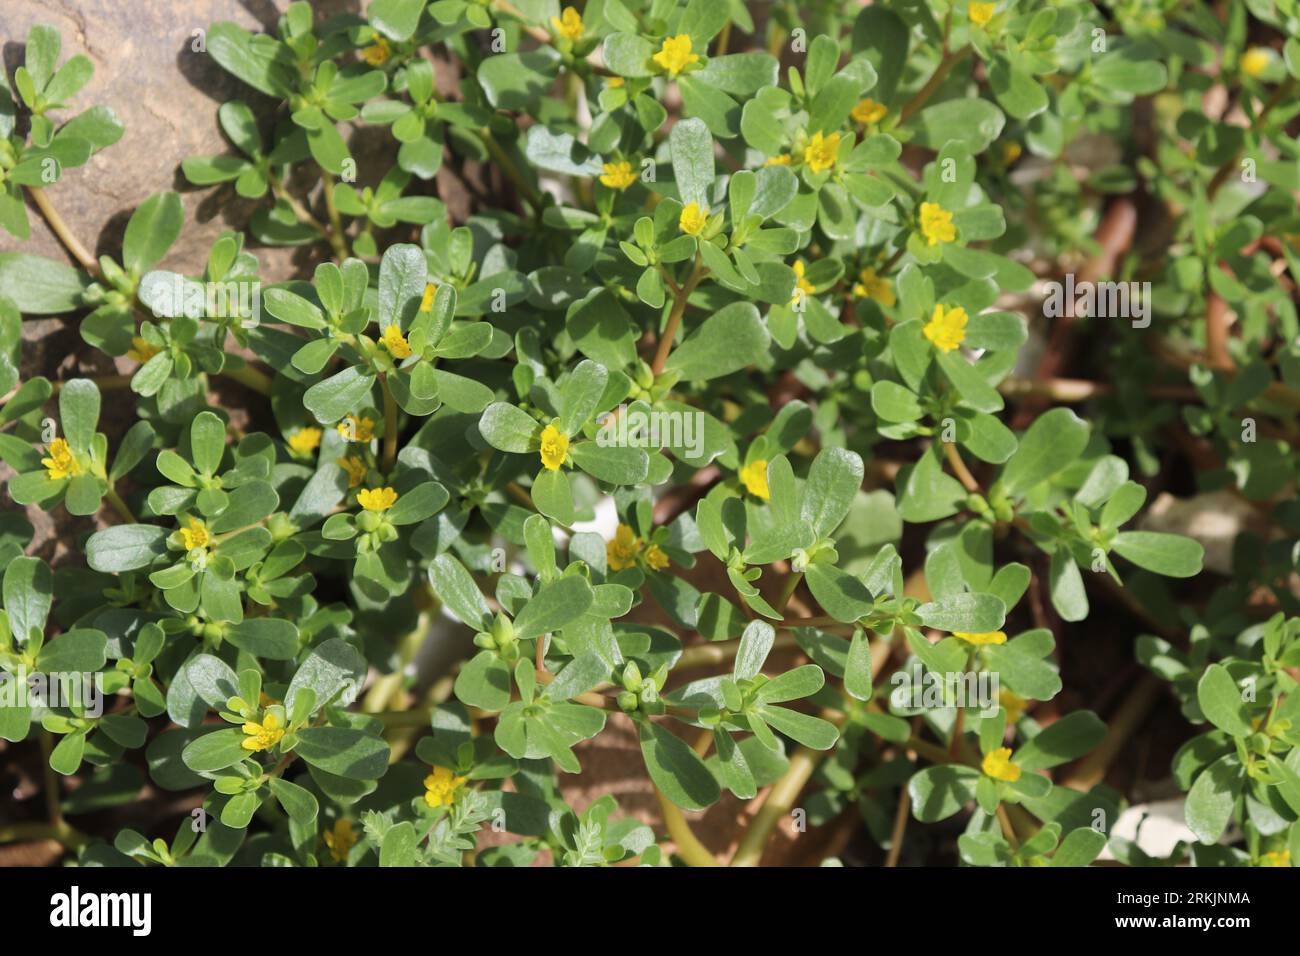 Common purslane plant (Portulaca oleracea) Stock Photo